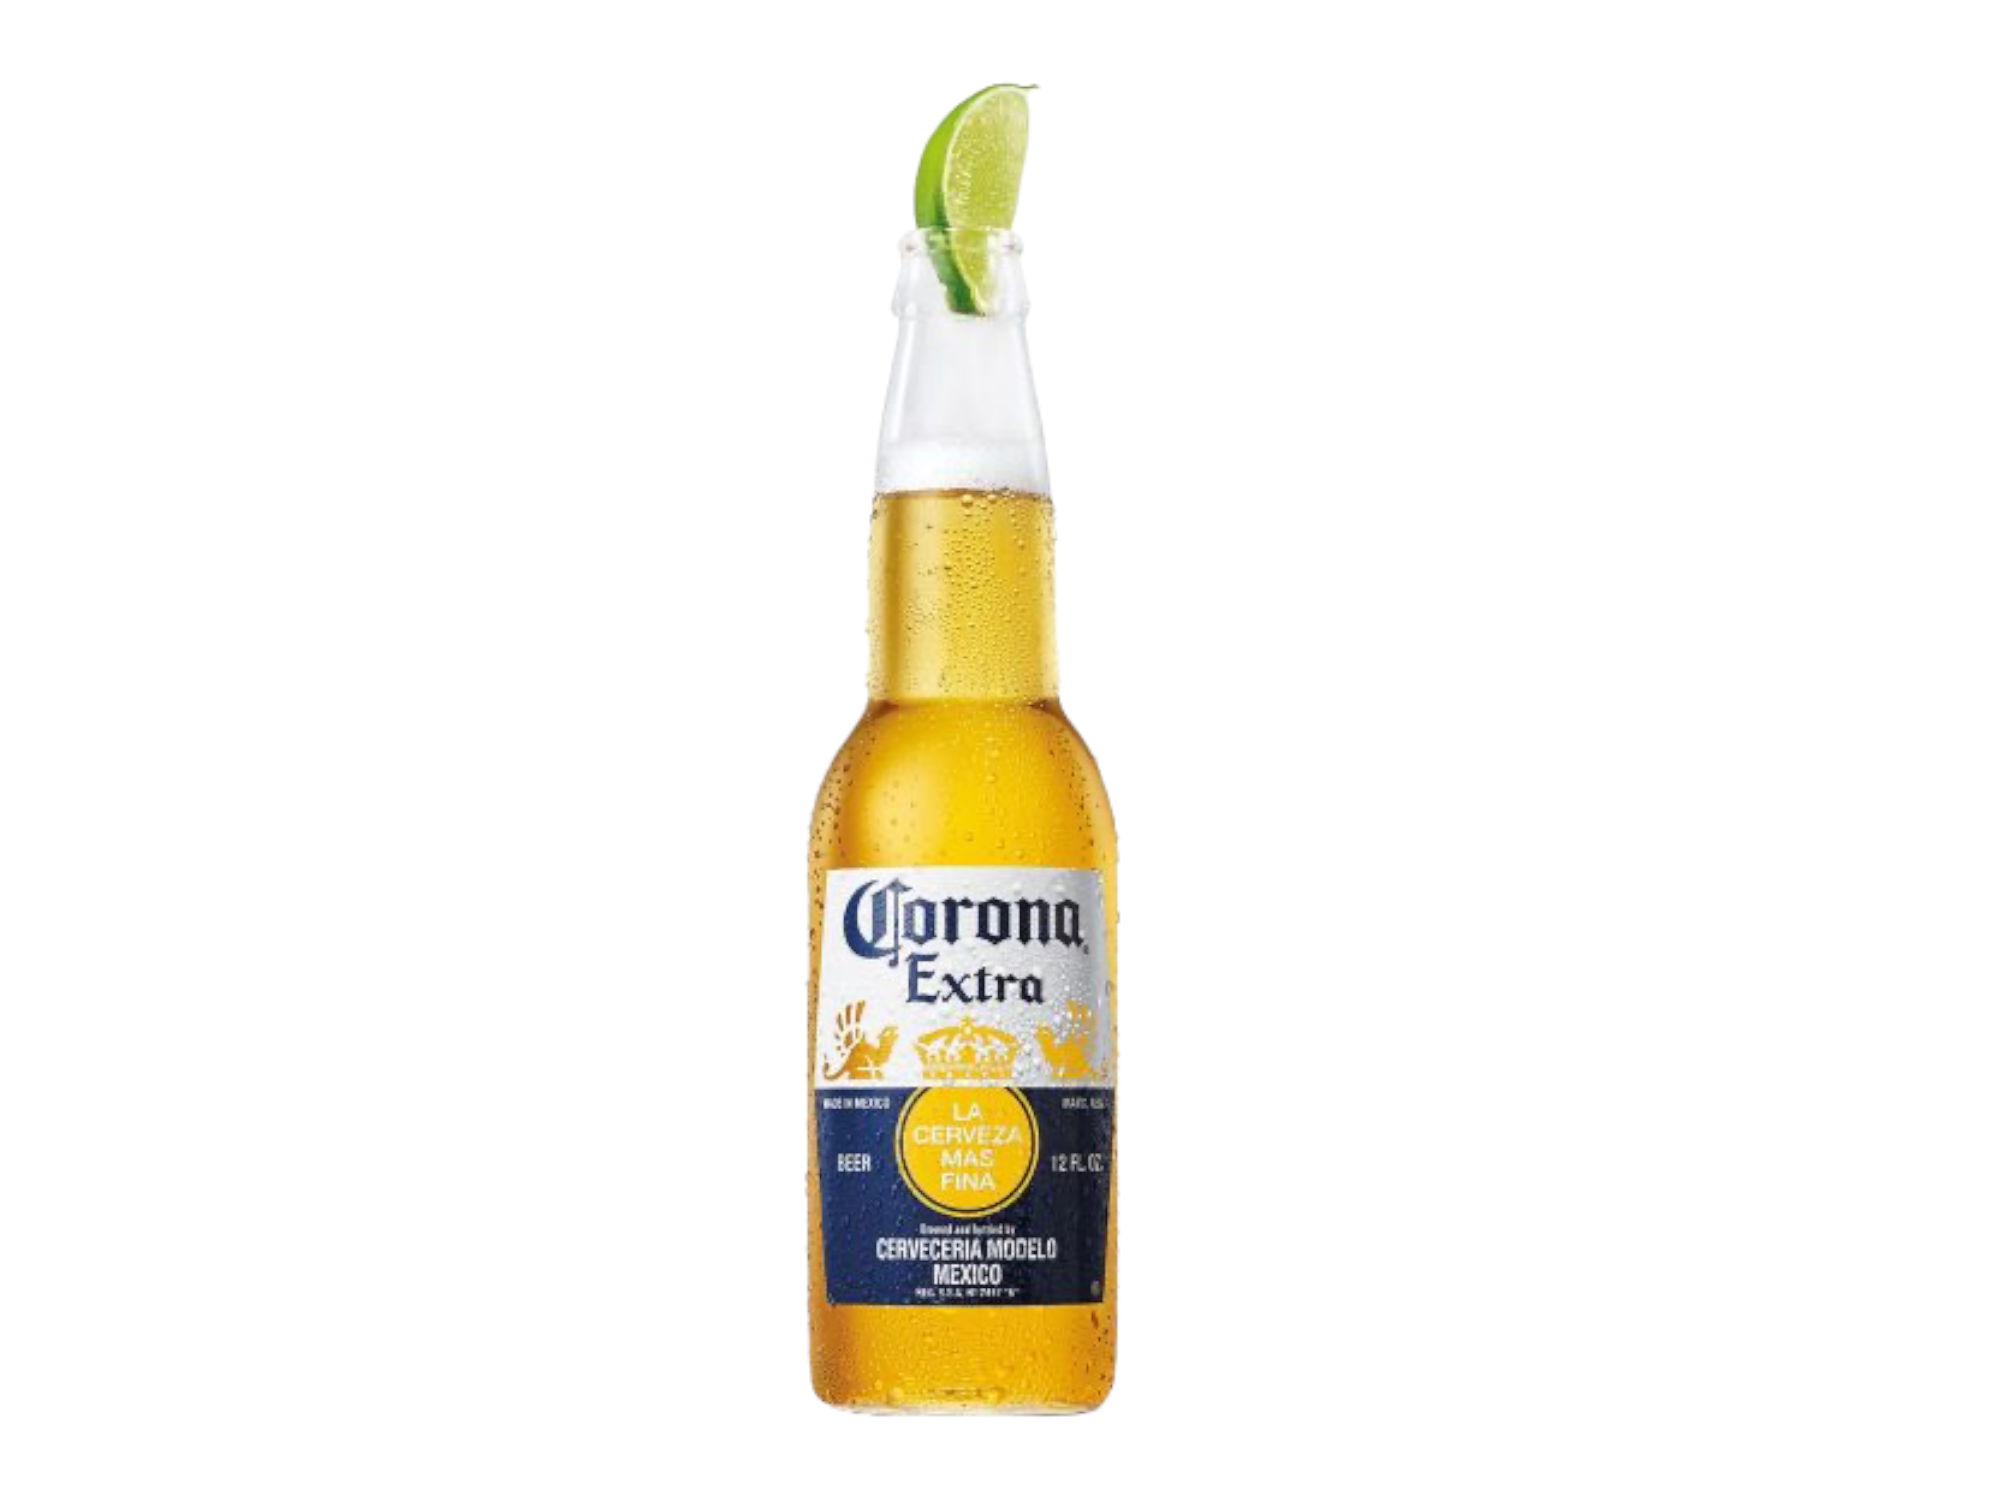 Cerveza de botella Corona